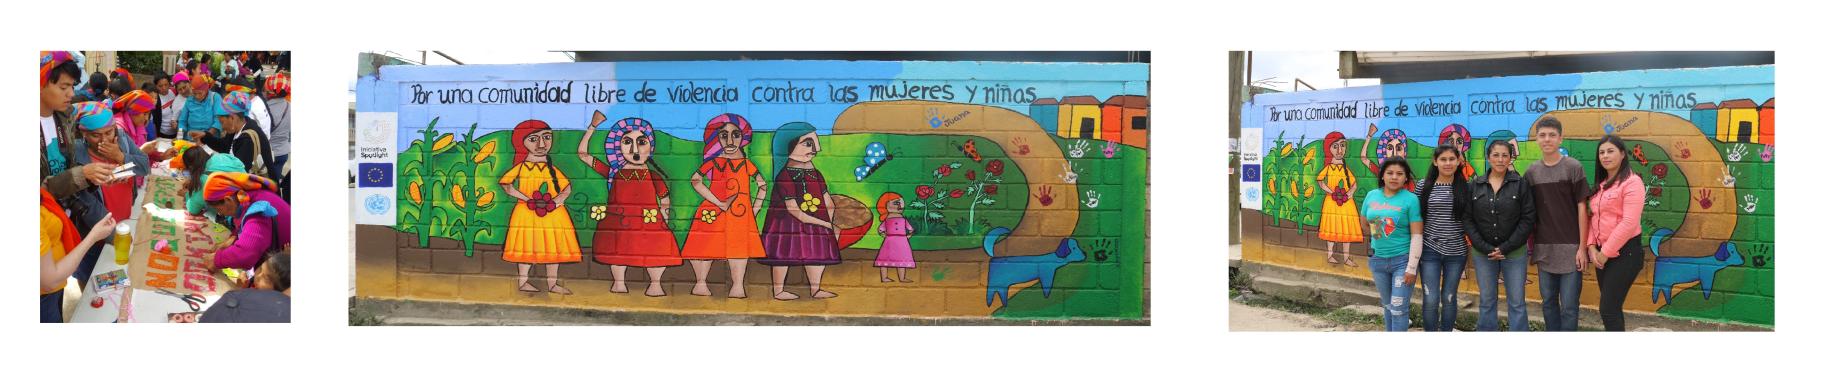 Tres mosaicos de imágenes: el primero muestra a miembros de la comunidad indígena pintando alrededor de una mesa, el segundo muestra el mural completo en el que aparecen mujeres indígenas bajo el titular "Por una comunidad libre de violencia contra las mujeres y las niñas"; y el tercero muestra a miembros de la comunidad de pie frente al mural pintado. 